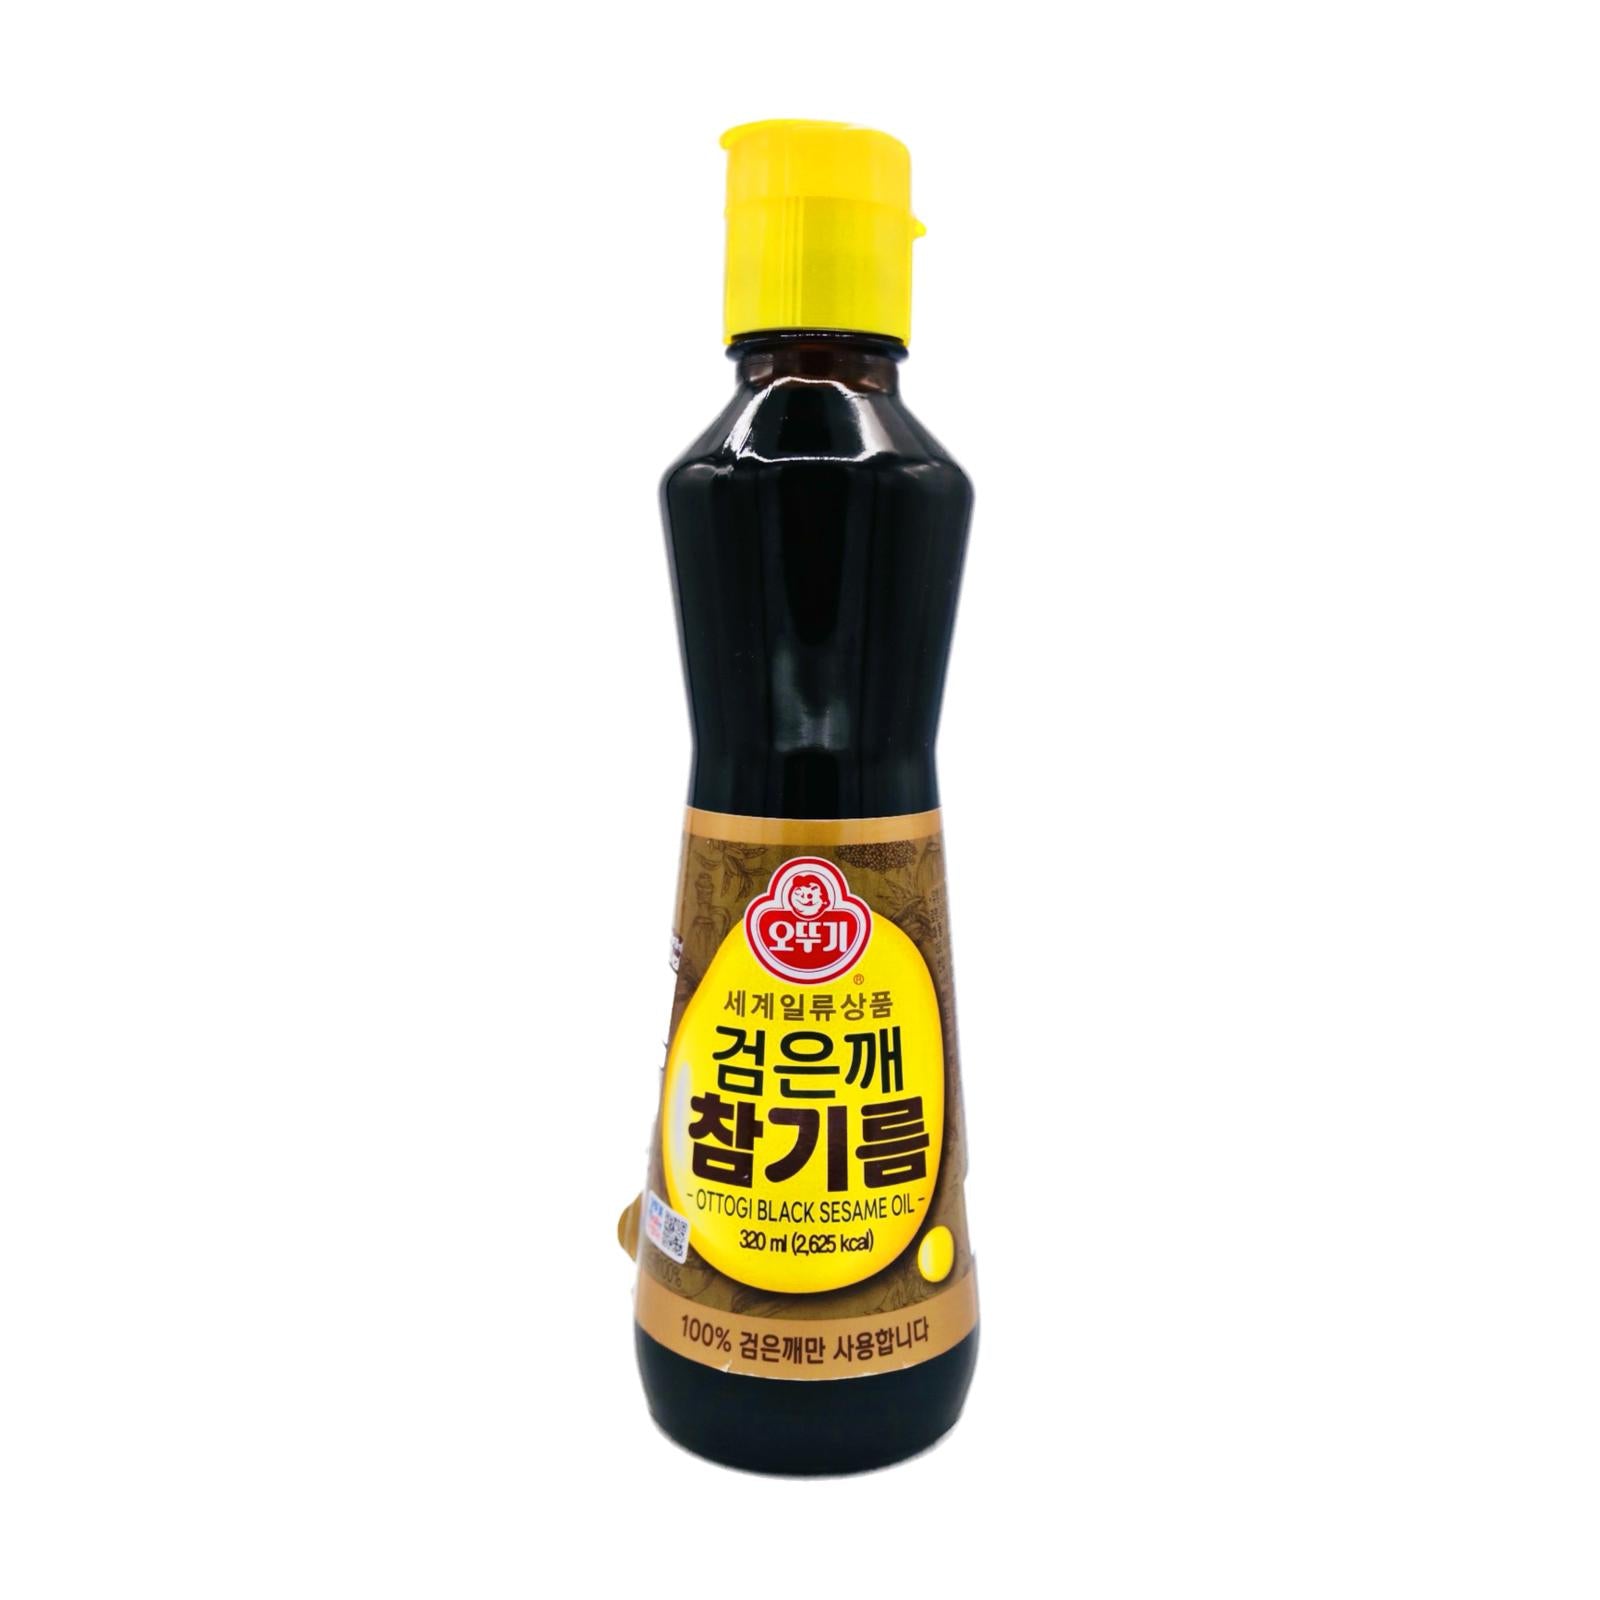 Ottogi Black Sesame Oil 320ml - Tuk Tuk Mart